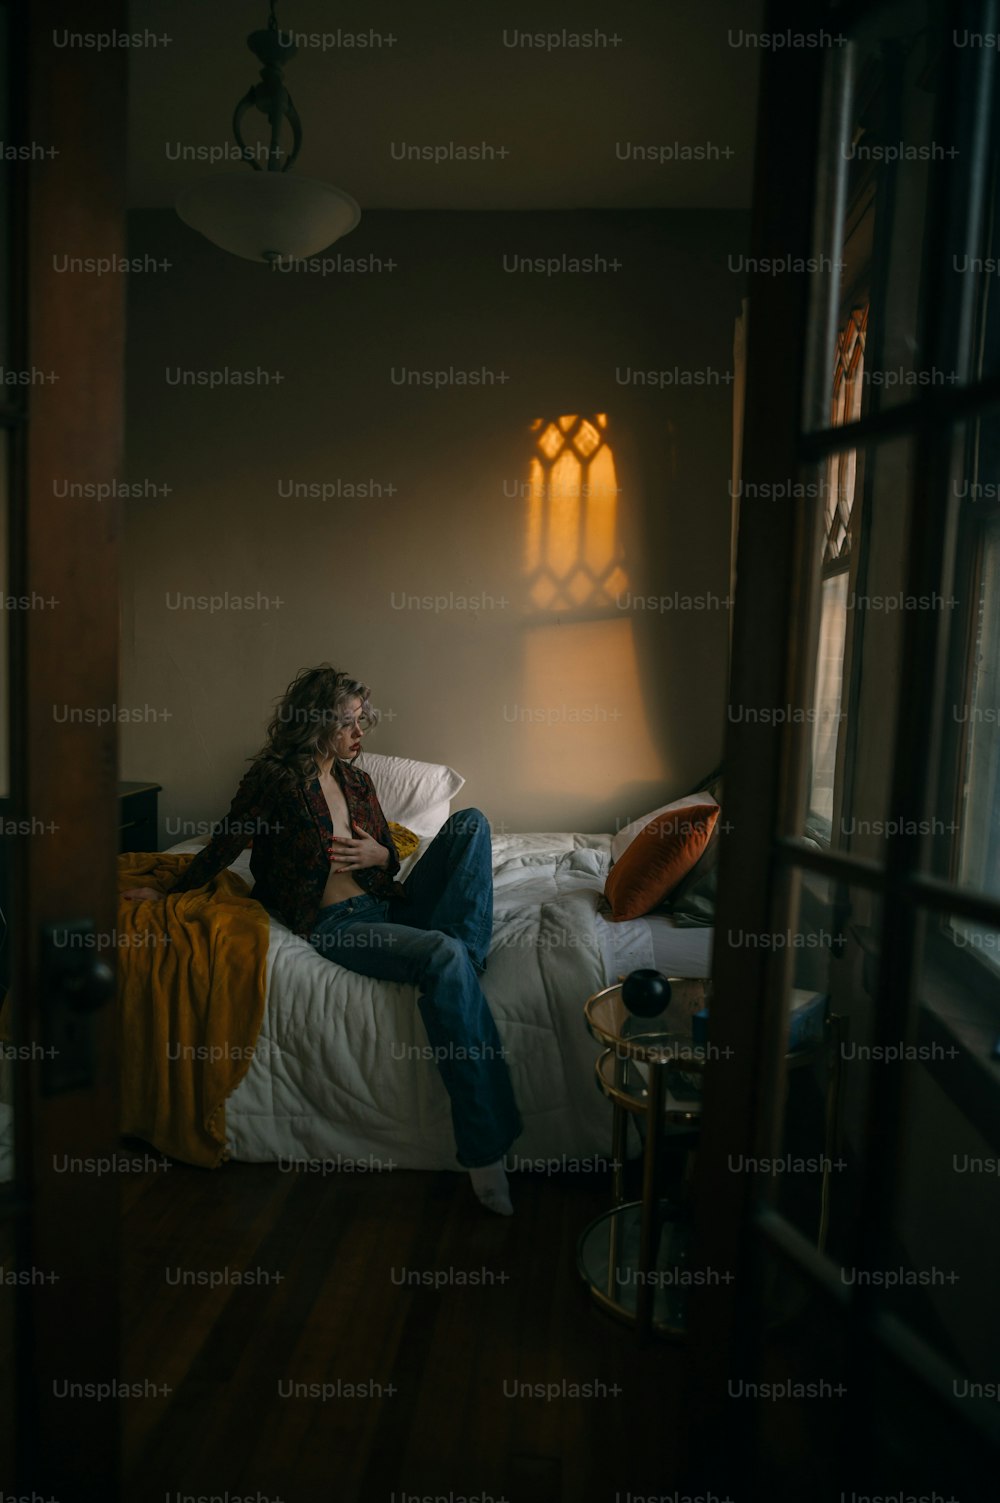 Eine Frau sitzt auf einem Bett in einem dunklen Raum